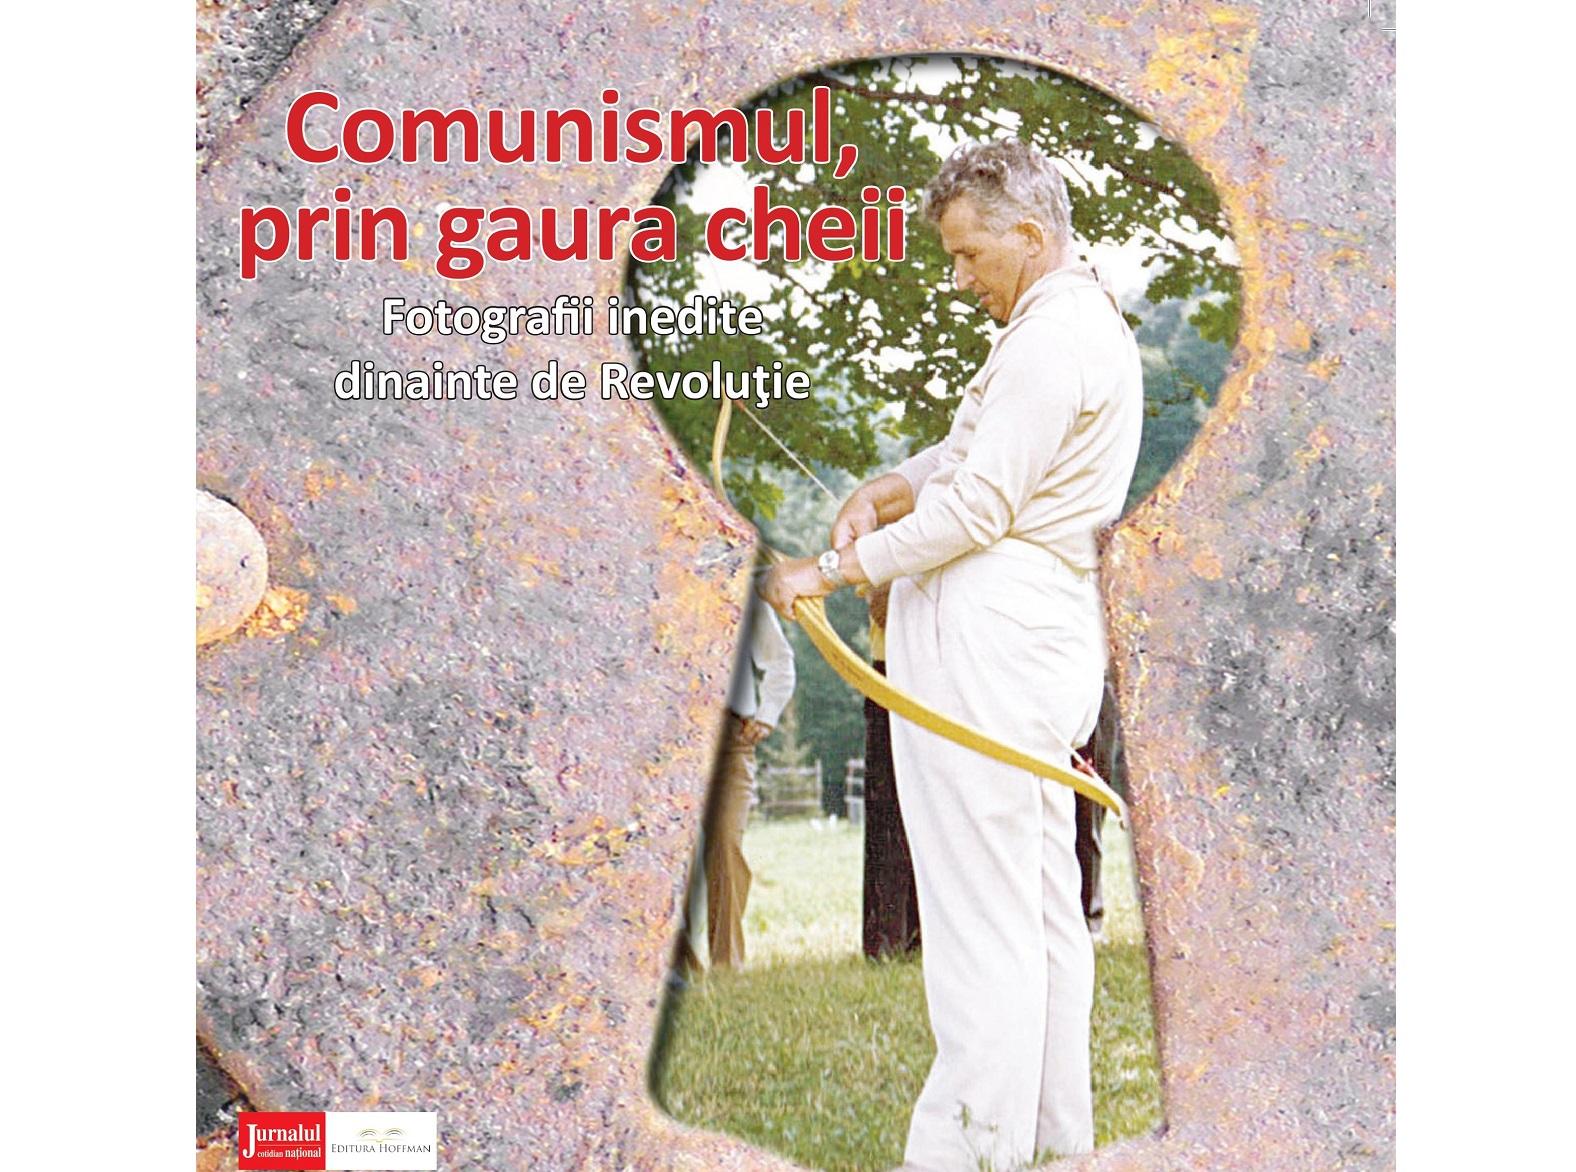 Jurnalul lansează un album cu imagini nemaivăzute. „Comunismul, prin gaura cheii. Fotografii inedite dinainte de Revoluţie"